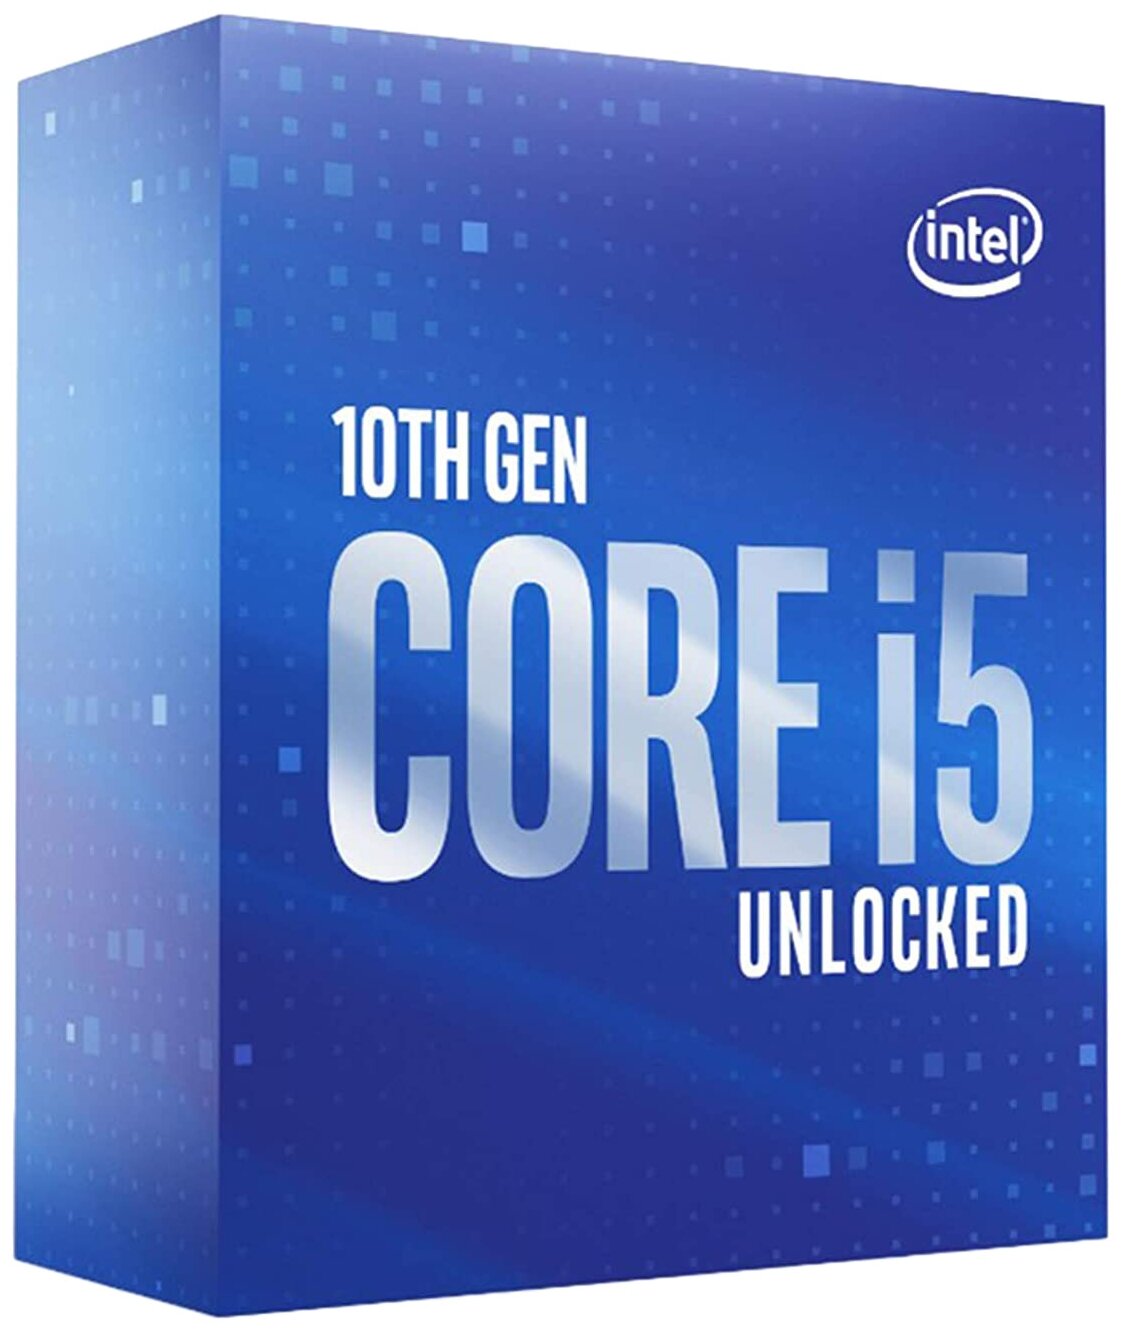 Процессор Intel Core I5-10600K BOX (6/12 ядер,4.1-4.8ГГц,DDR4-2666,UHD 630,125W)LGA1200, w/o cooler